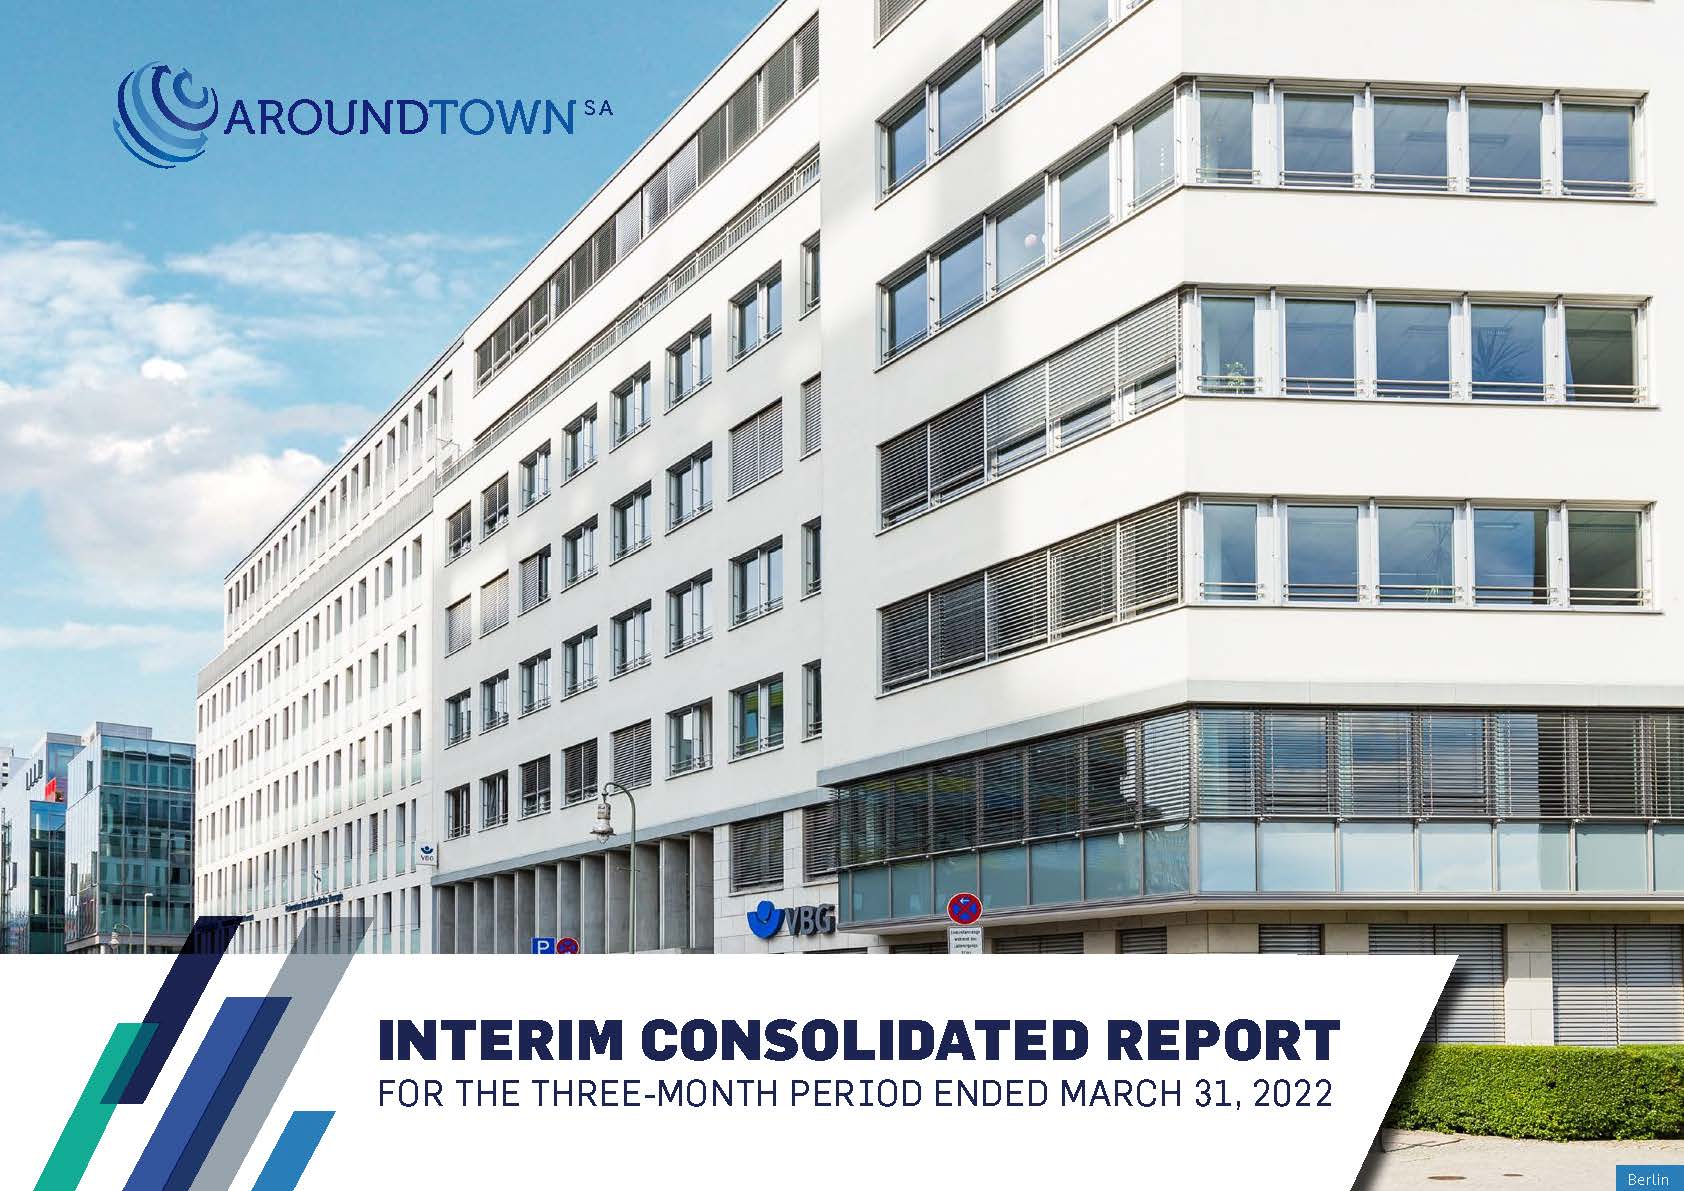 Q1 2022 Interim Consolidated Report